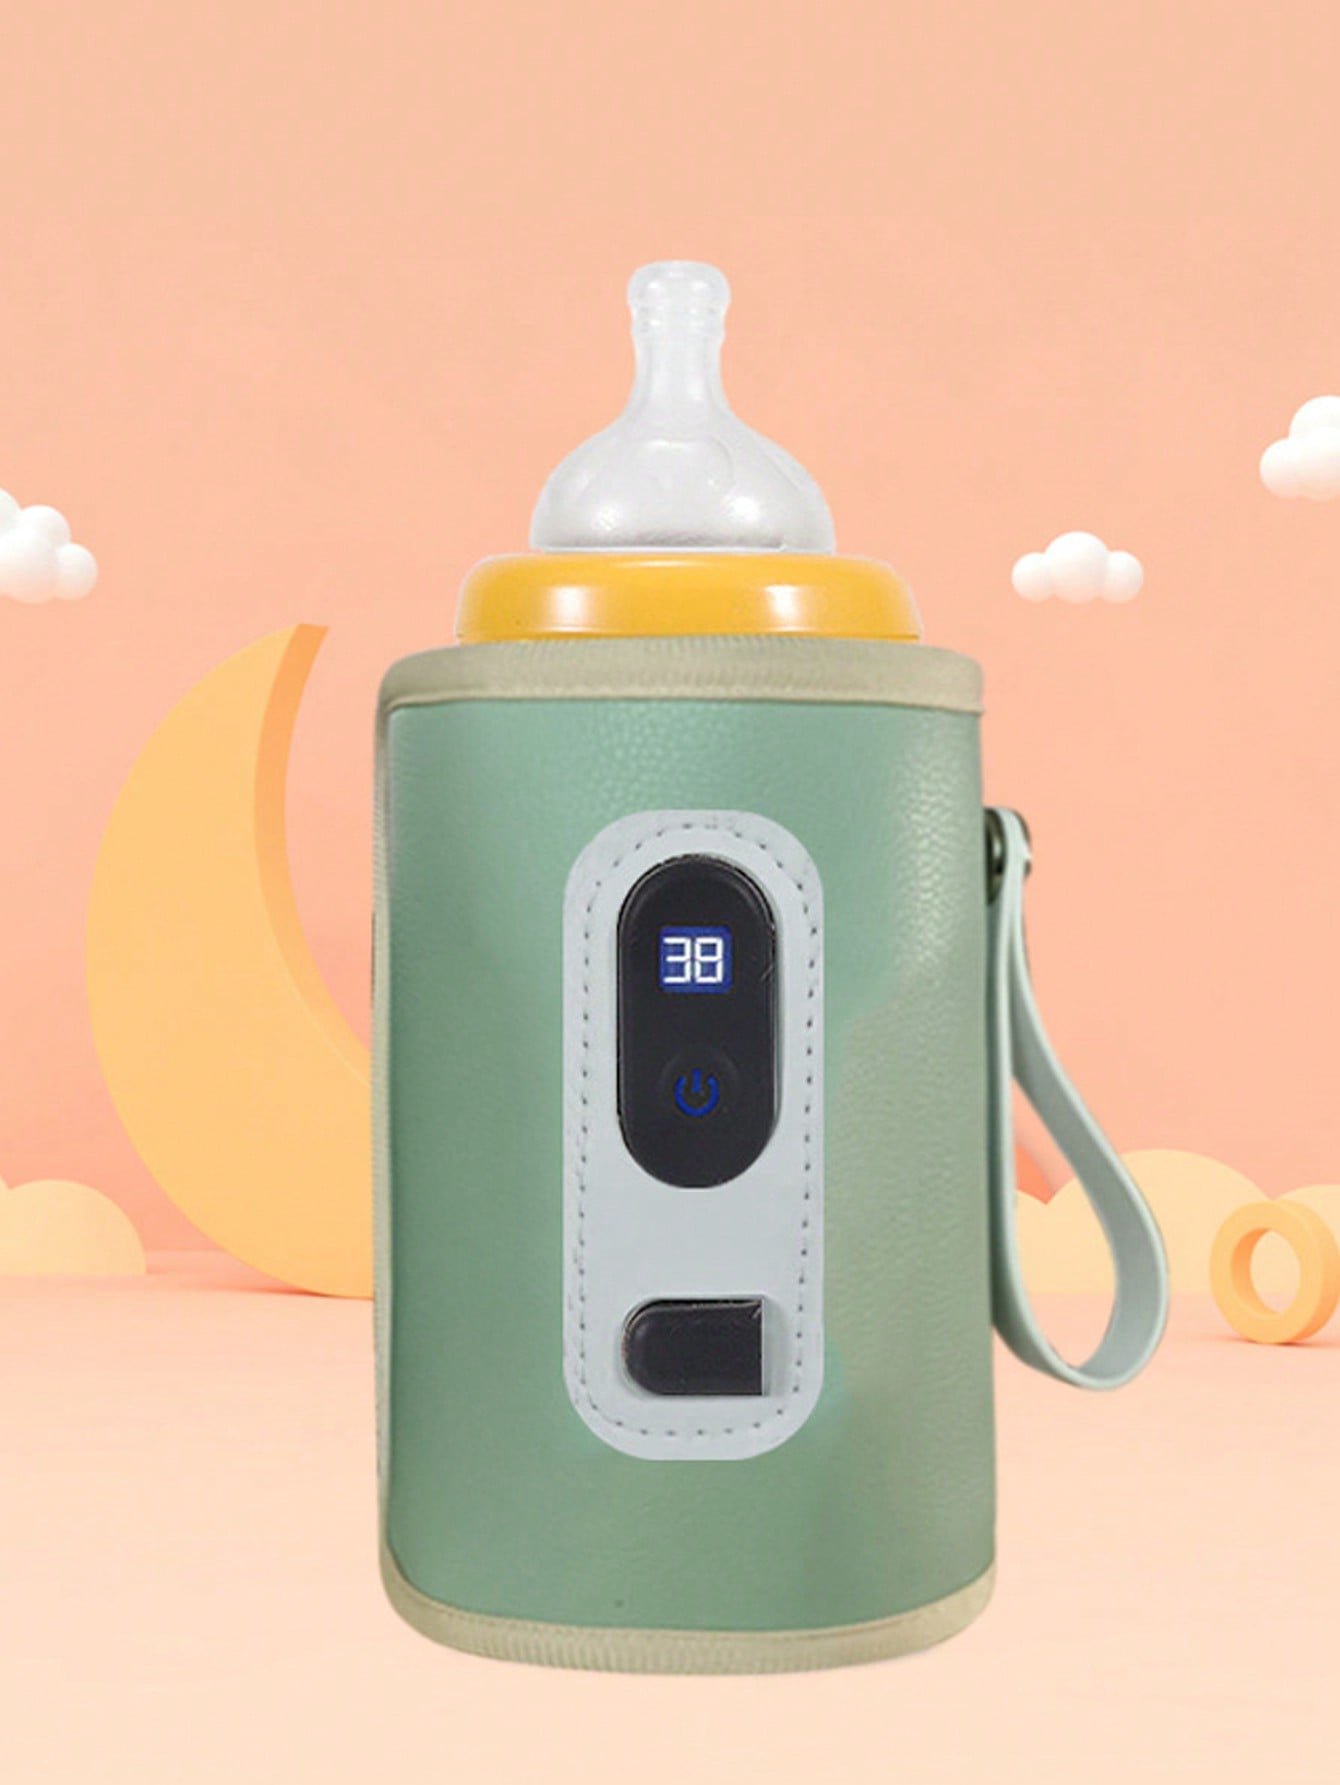 (Power By USB) Portable Bottle Warmer Milk Water Warmer Bottle Heater Drink Warm Milk Thermostat Bag-Green-1